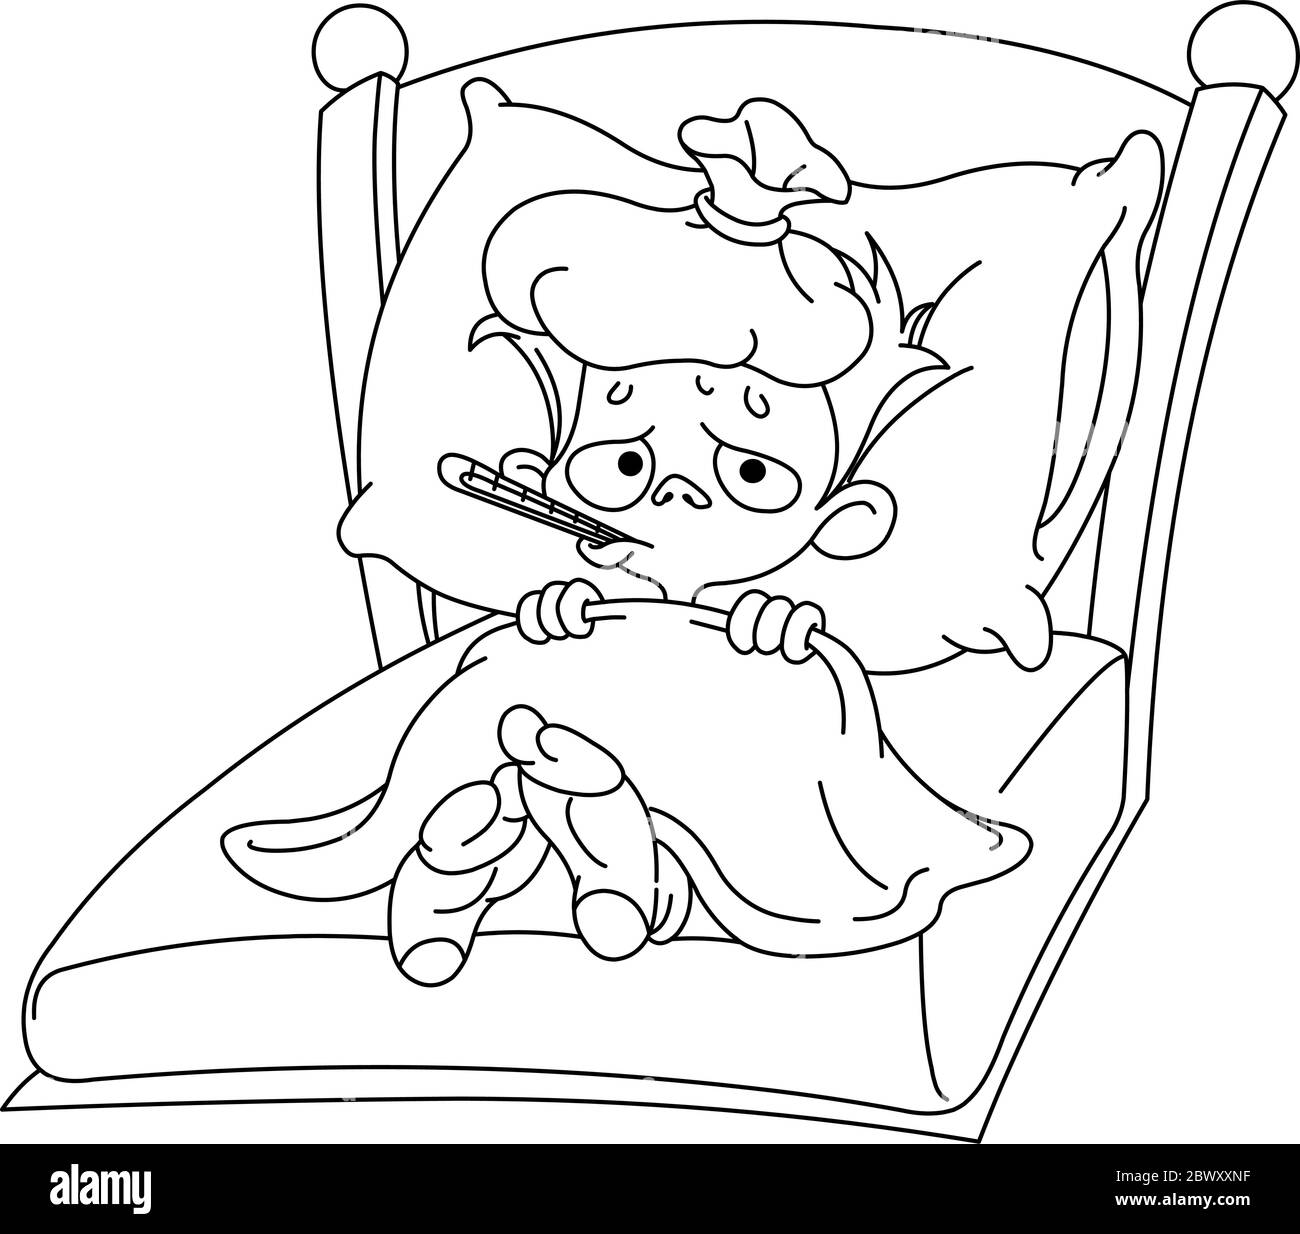 Un enfant malade allongé dans un lit. Page de coloriage d'illustration vectorielle. Illustration de Vecteur